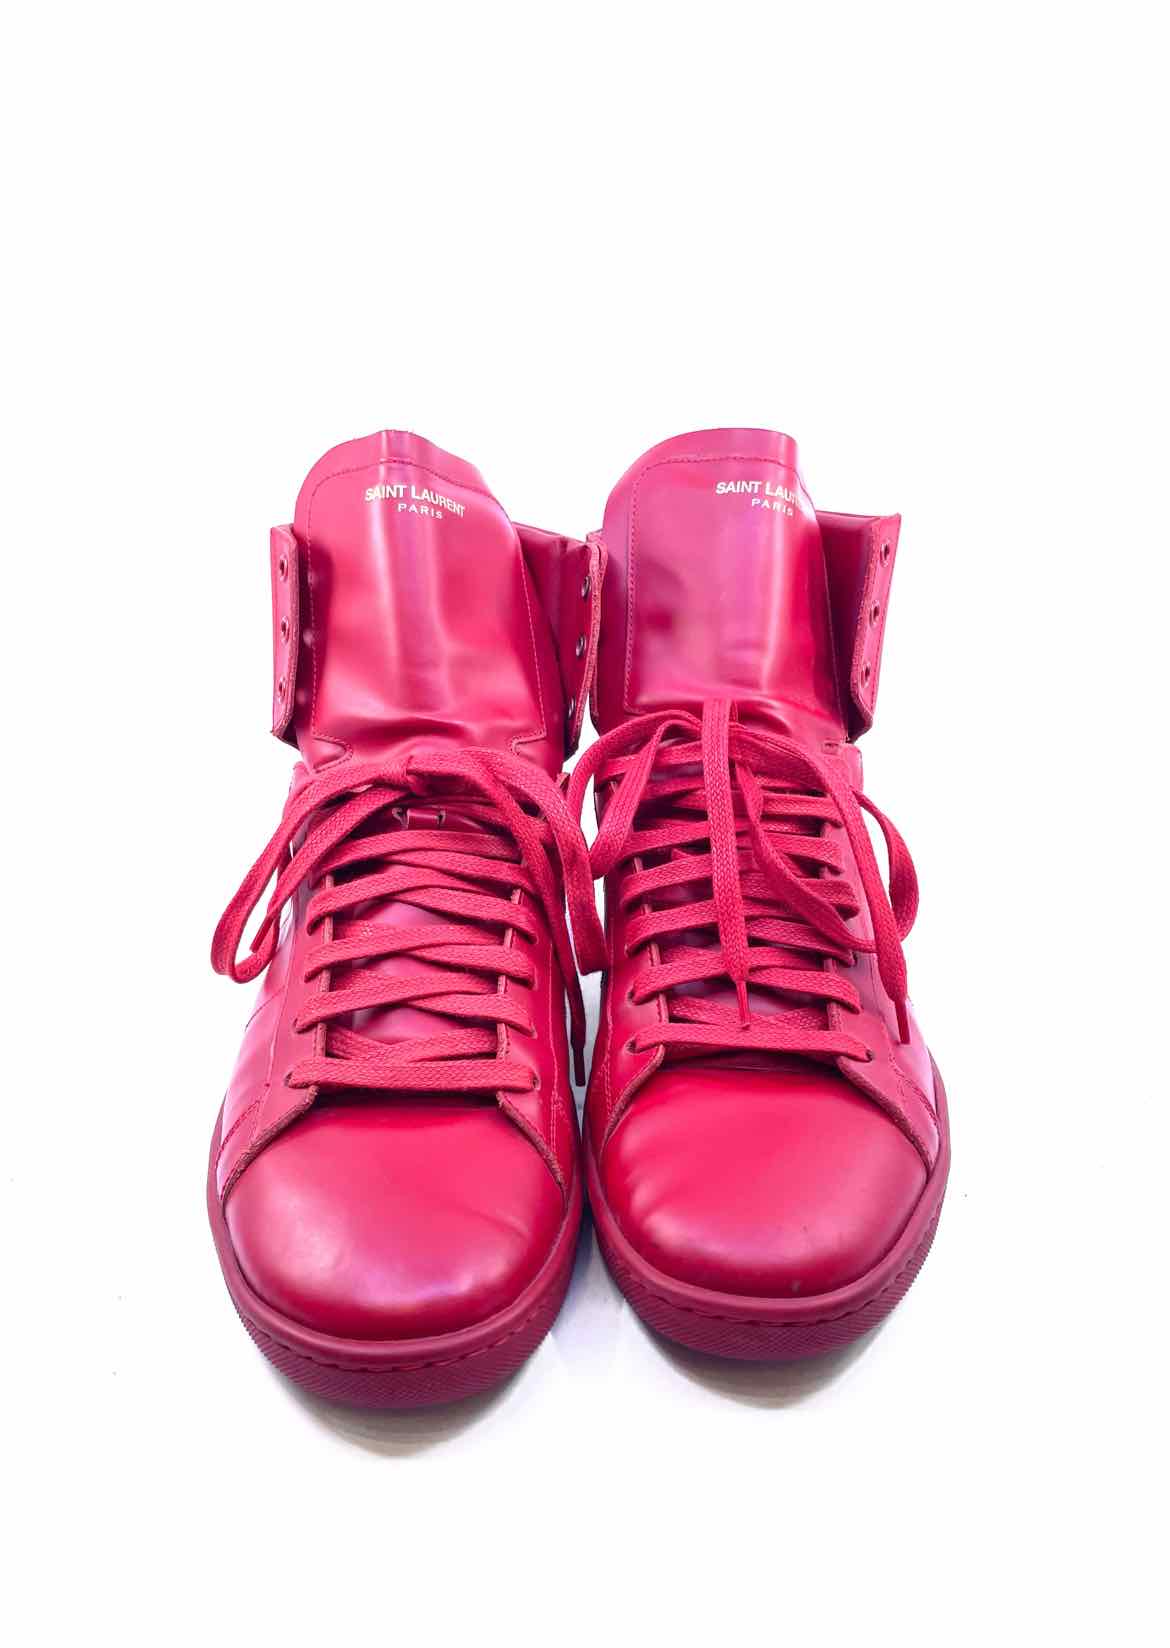 Emigrere Ingen madras SAINT LAURENT Size 44 Red Men's Sneakers – Labels Luxury